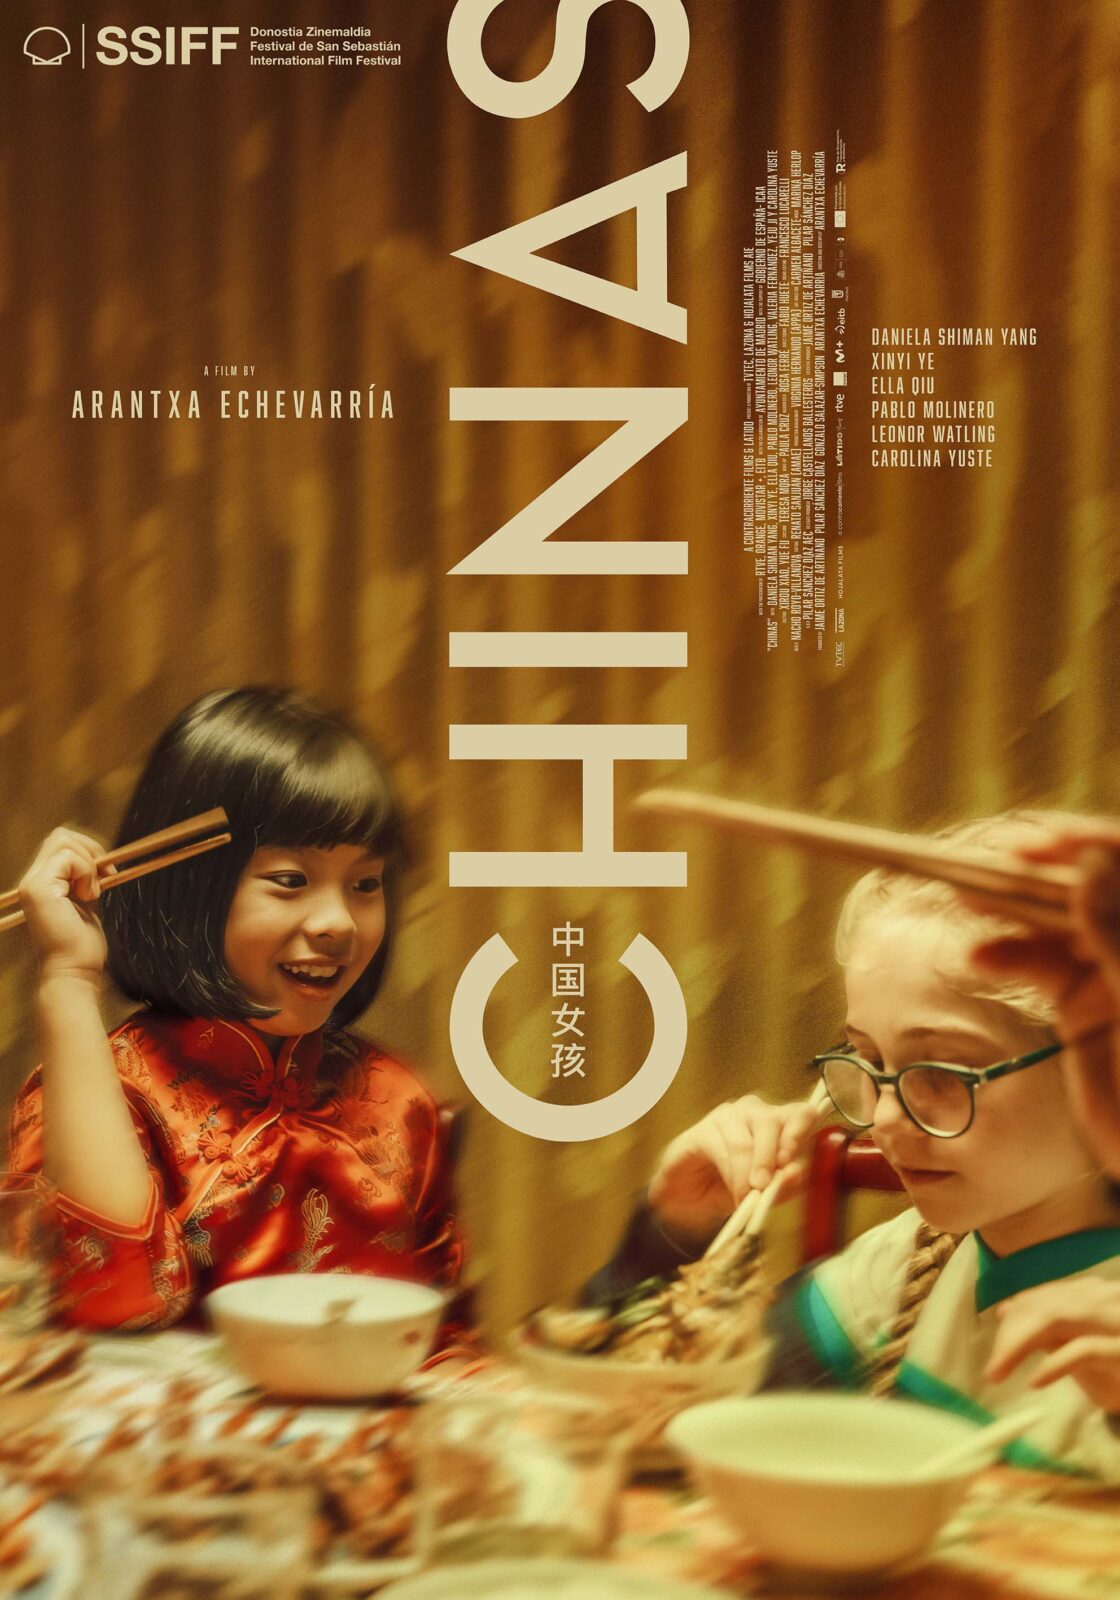 CHINAS - Latido Films